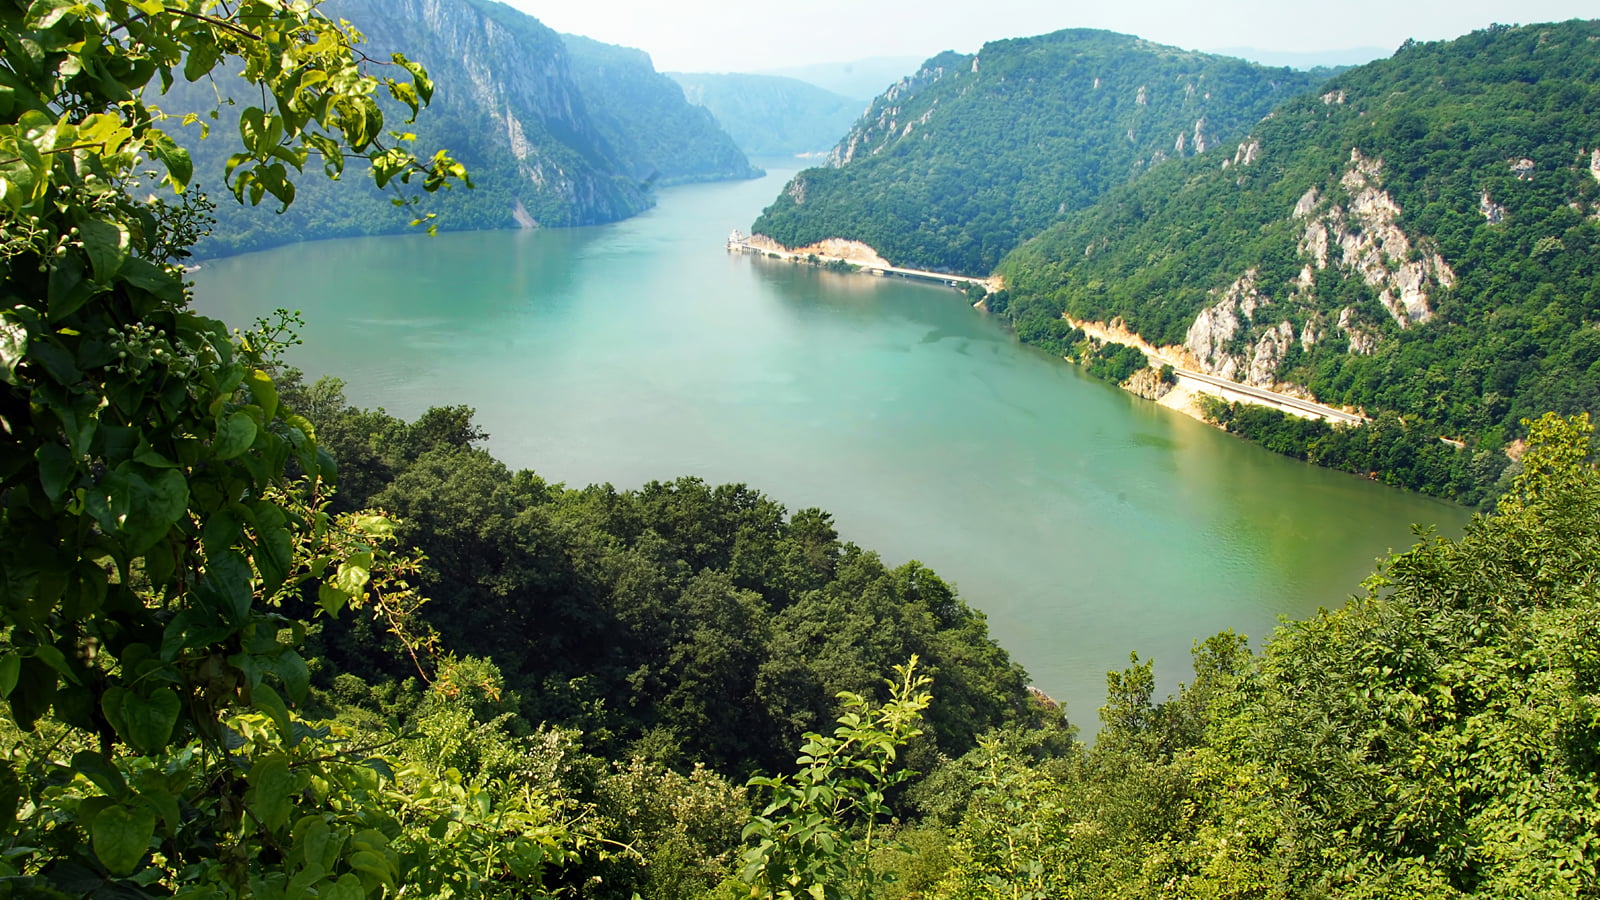 Accustom depth Necessities Oferta Croaziera pe Dunăre | Cazanele Dunarii | Continental Dr. Tr. Severin